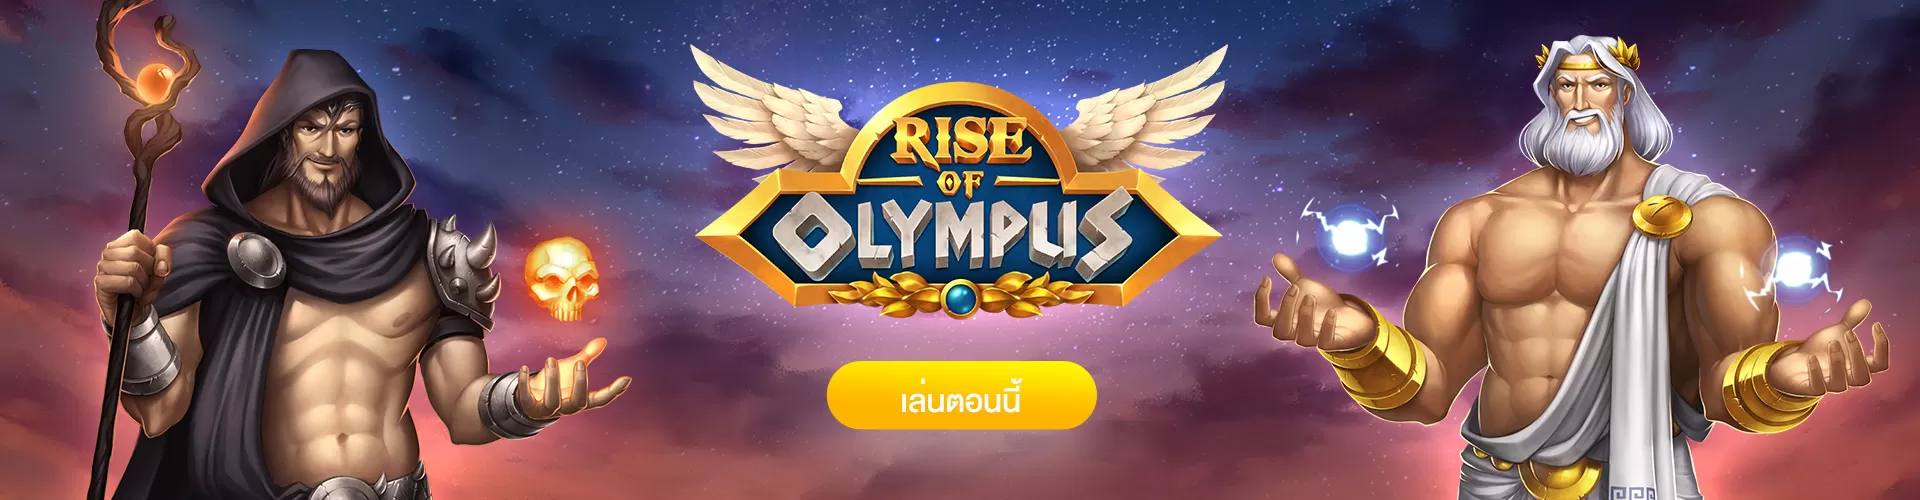 Rise of Olympus สล็อตตัวเทพ โบนัส 5000 เท่า